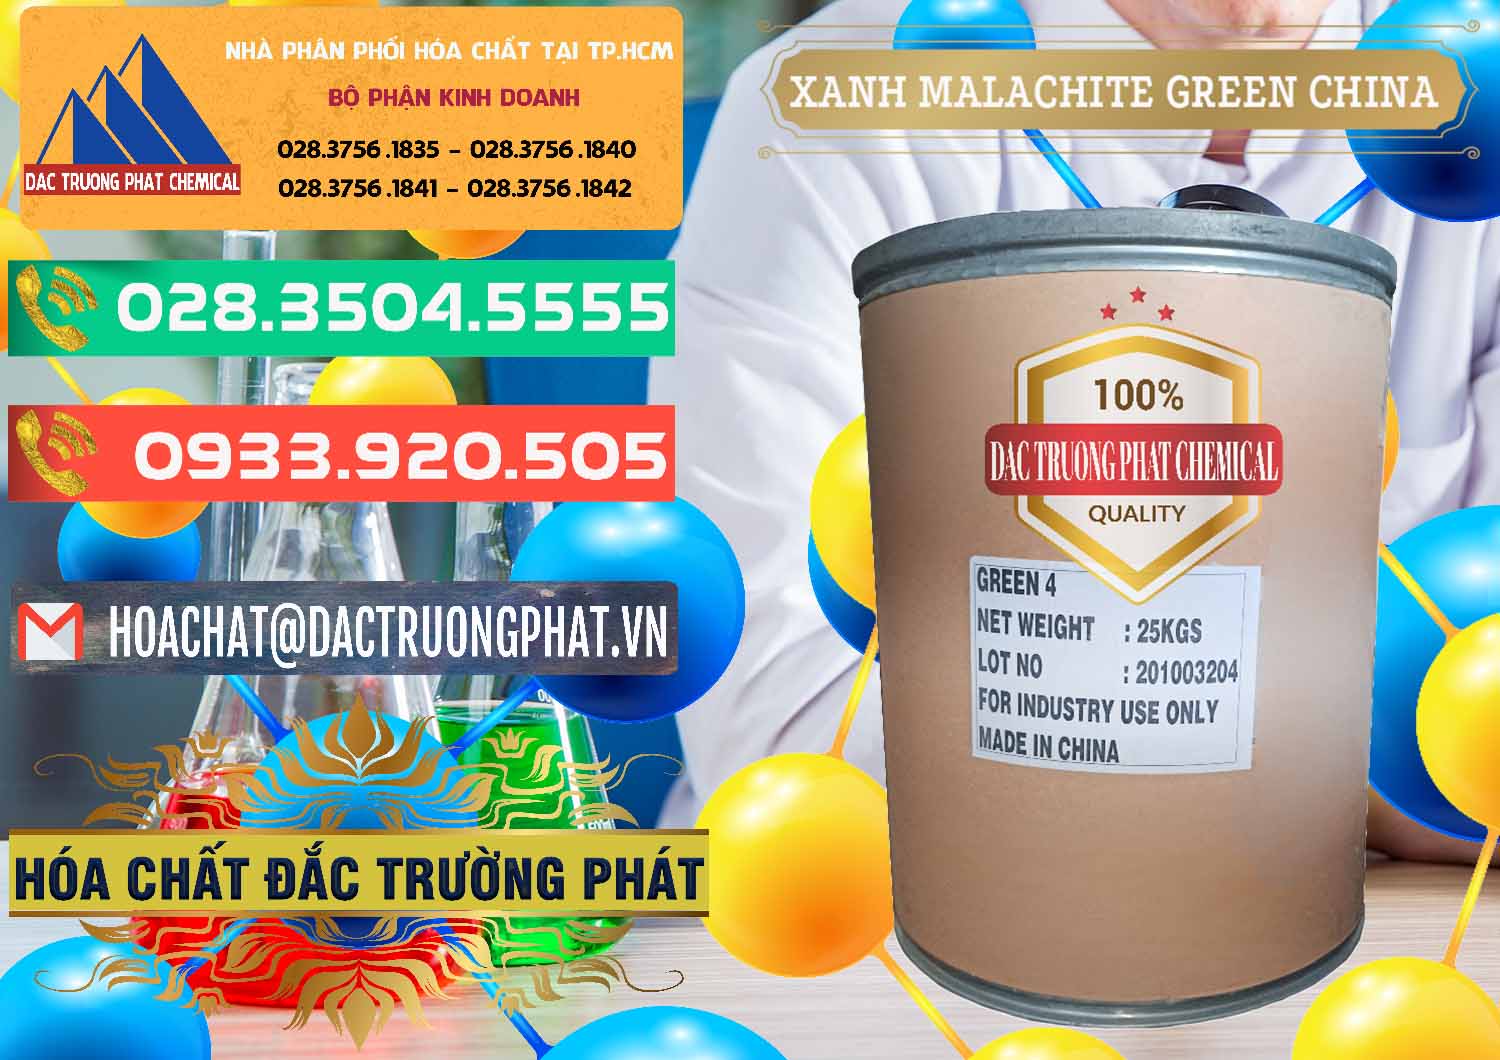 Nơi chuyên bán - cung ứng Xanh Malachite Green Trung Quốc China - 0325 - Cty cung cấp - phân phối hóa chất tại TP.HCM - congtyhoachat.com.vn